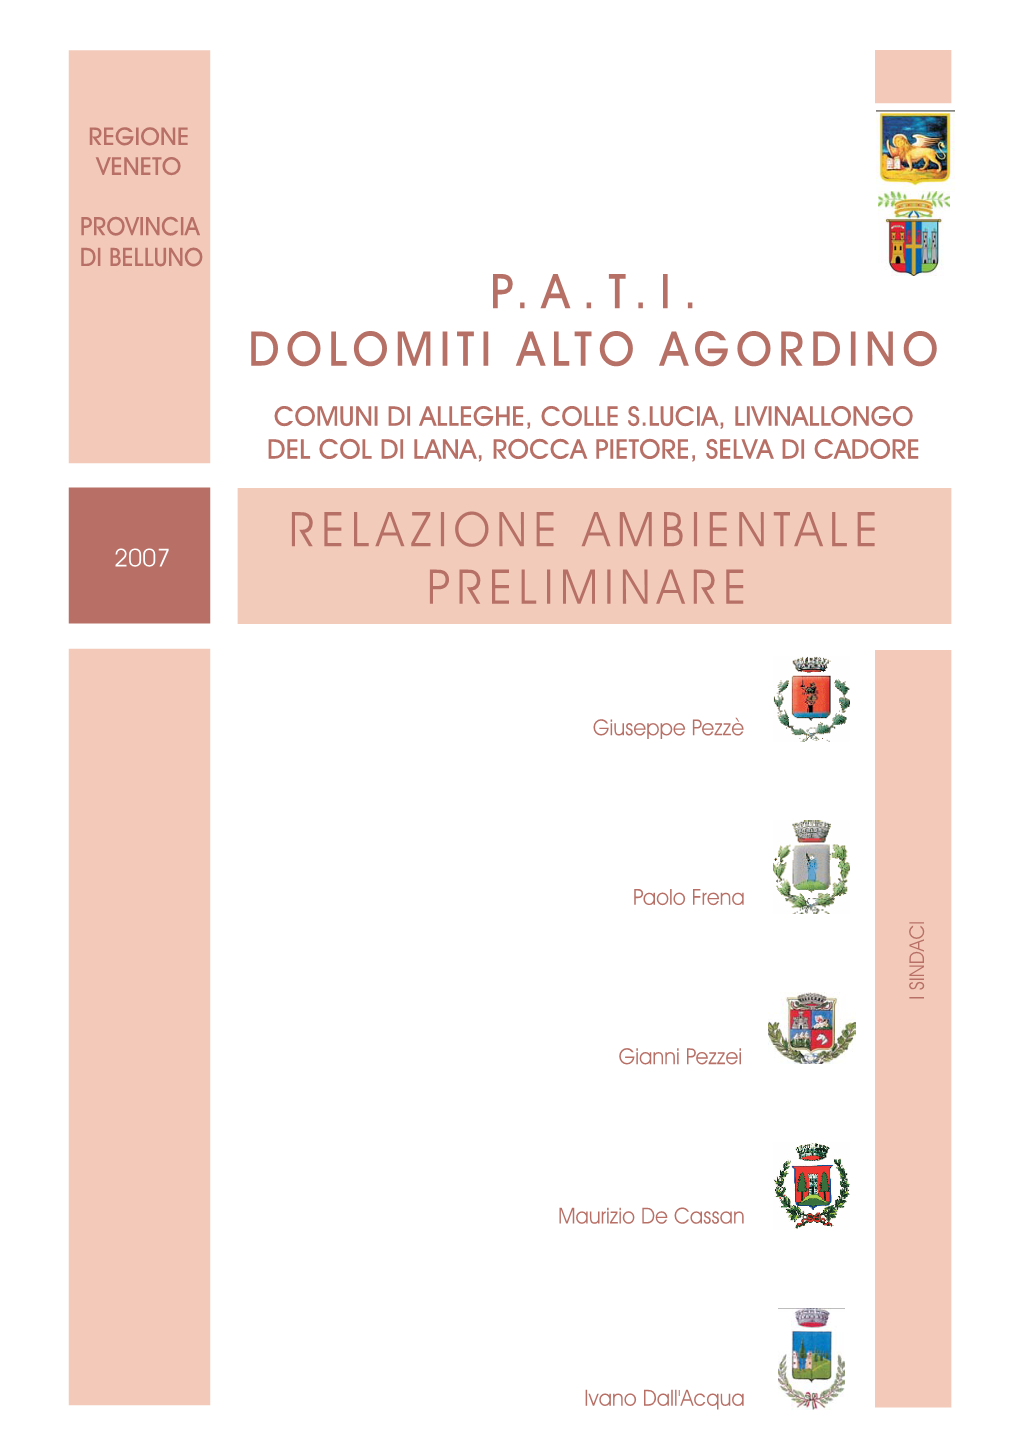 P.A.T.I. Dolomiti Alto Agordino Relazione Ambientale